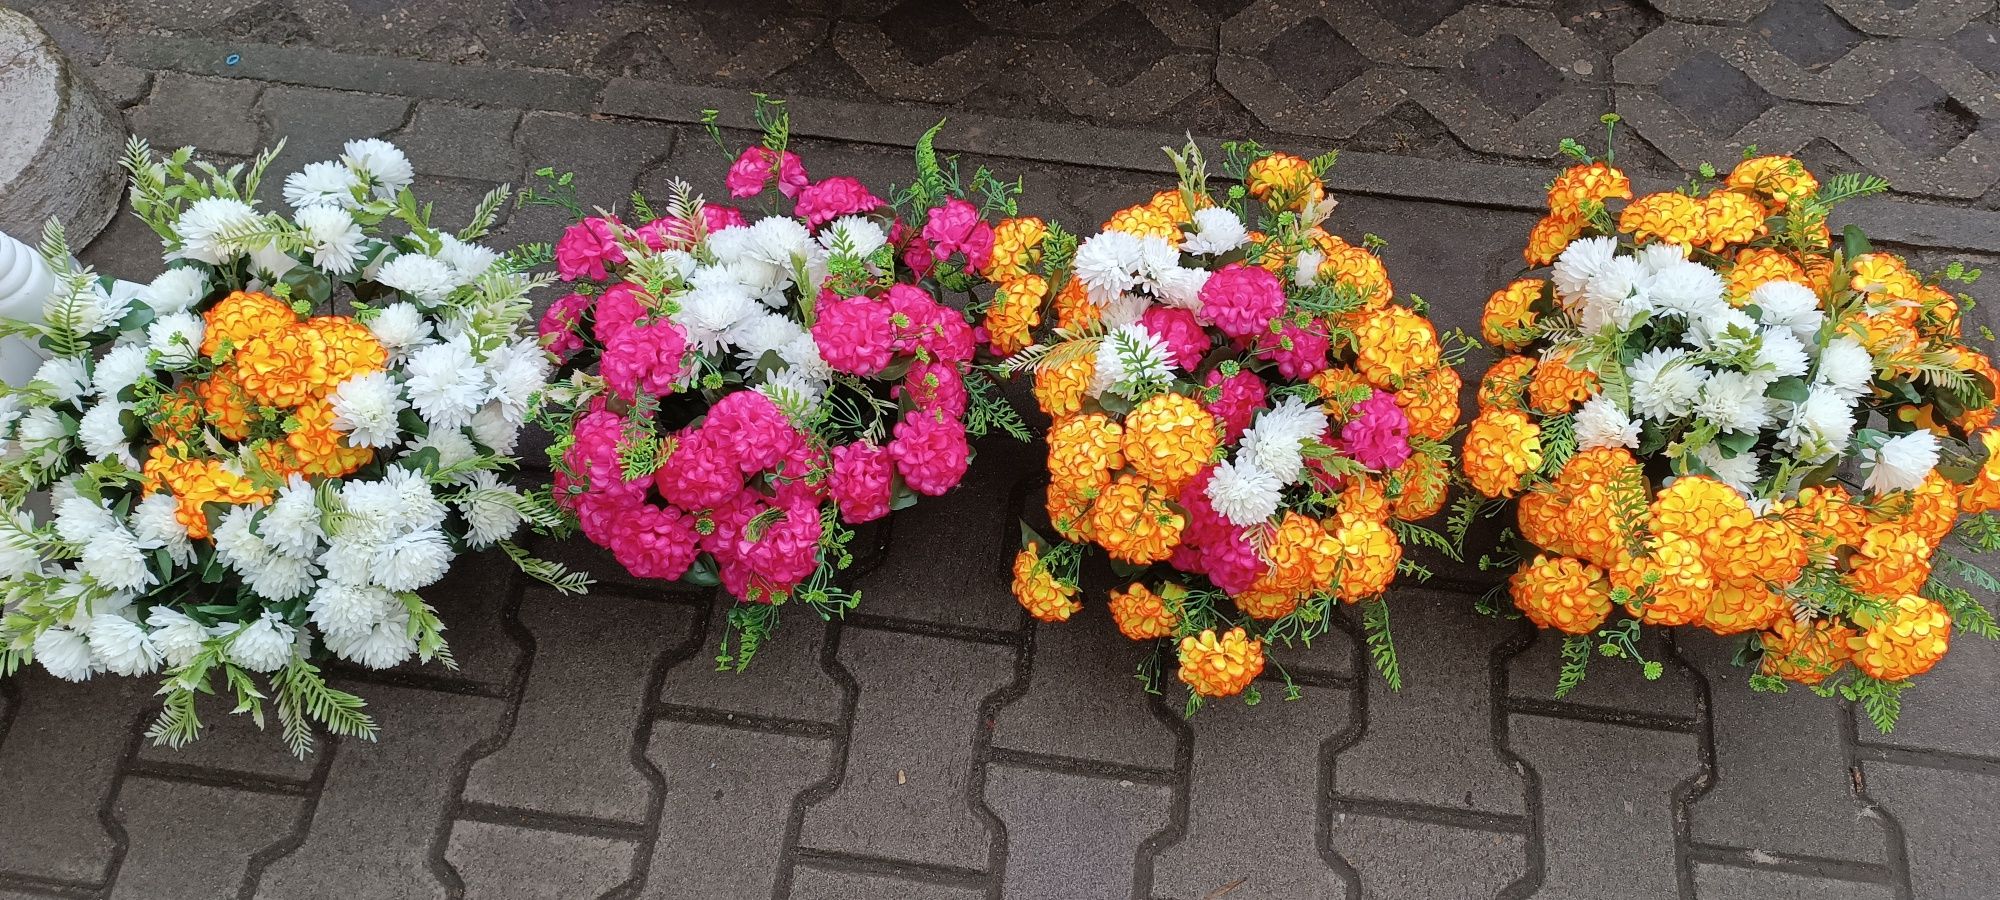 Kwiaty sztuczne bardzo duże bukiety Rzgowska 80 lok 3